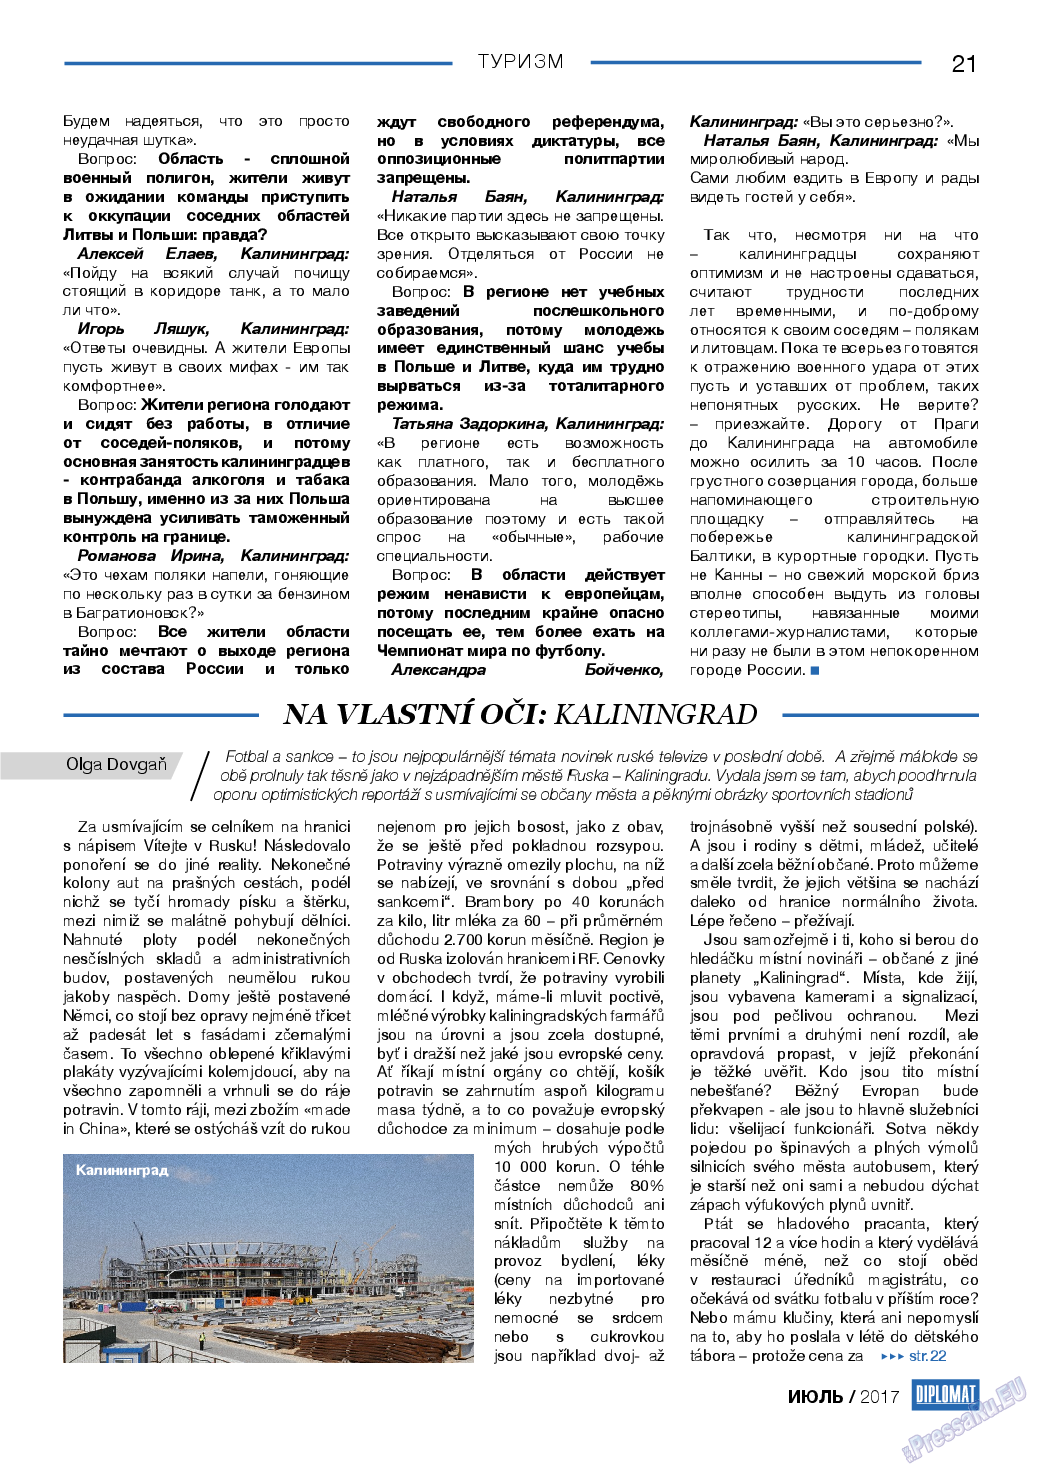 Diplomat, газета. 2017 №94 стр.21